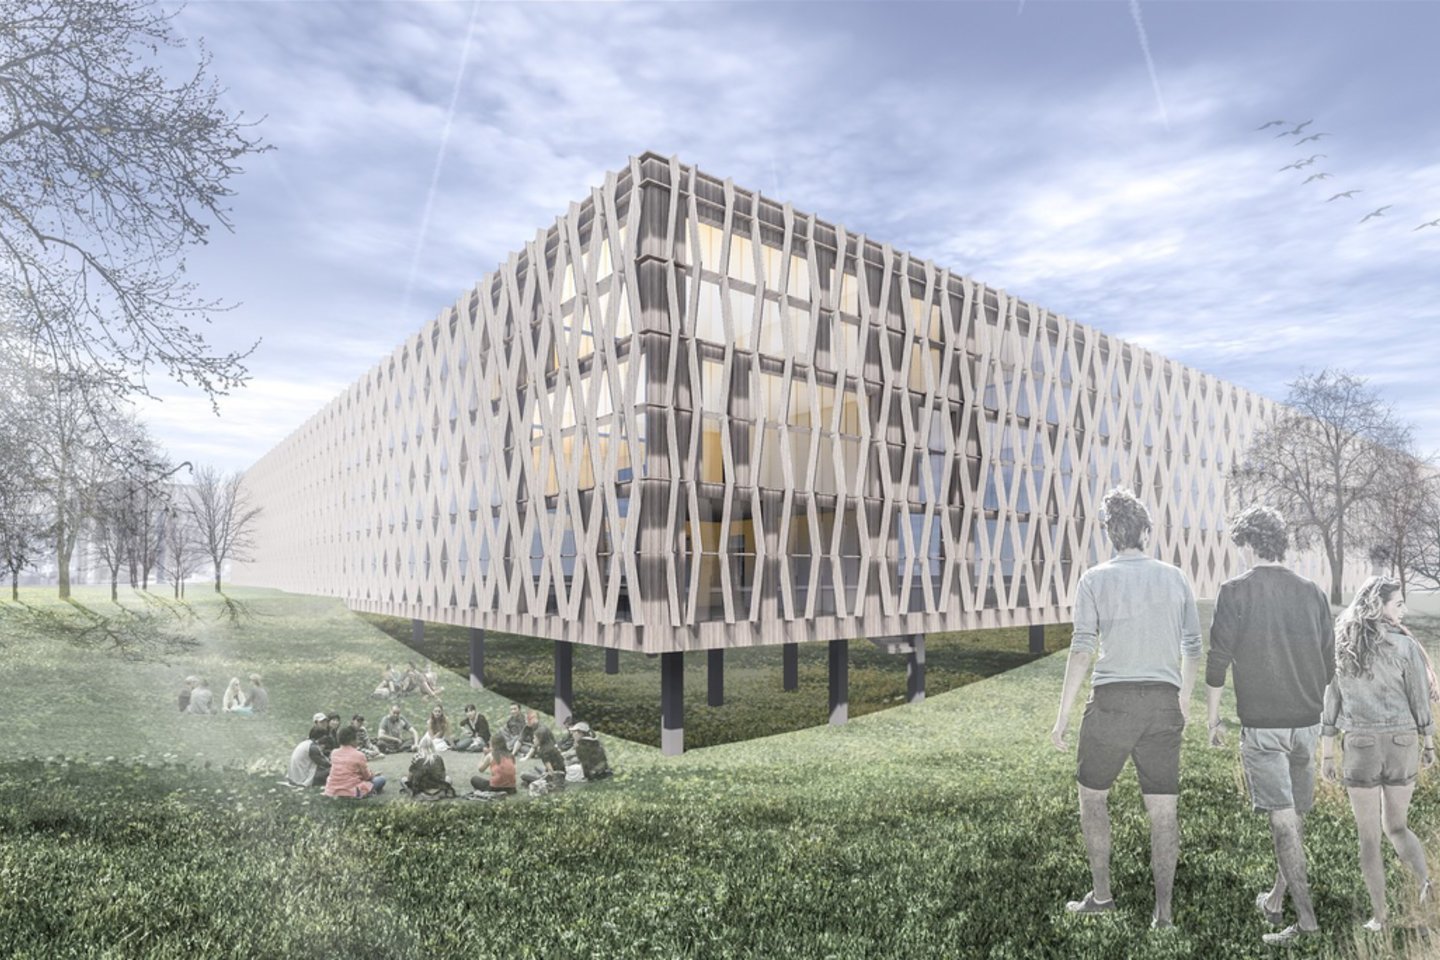 Naujos mokyklos Pilaitėje konkursui pateikta 18 architektūrinių idėjų.<br>vizual.